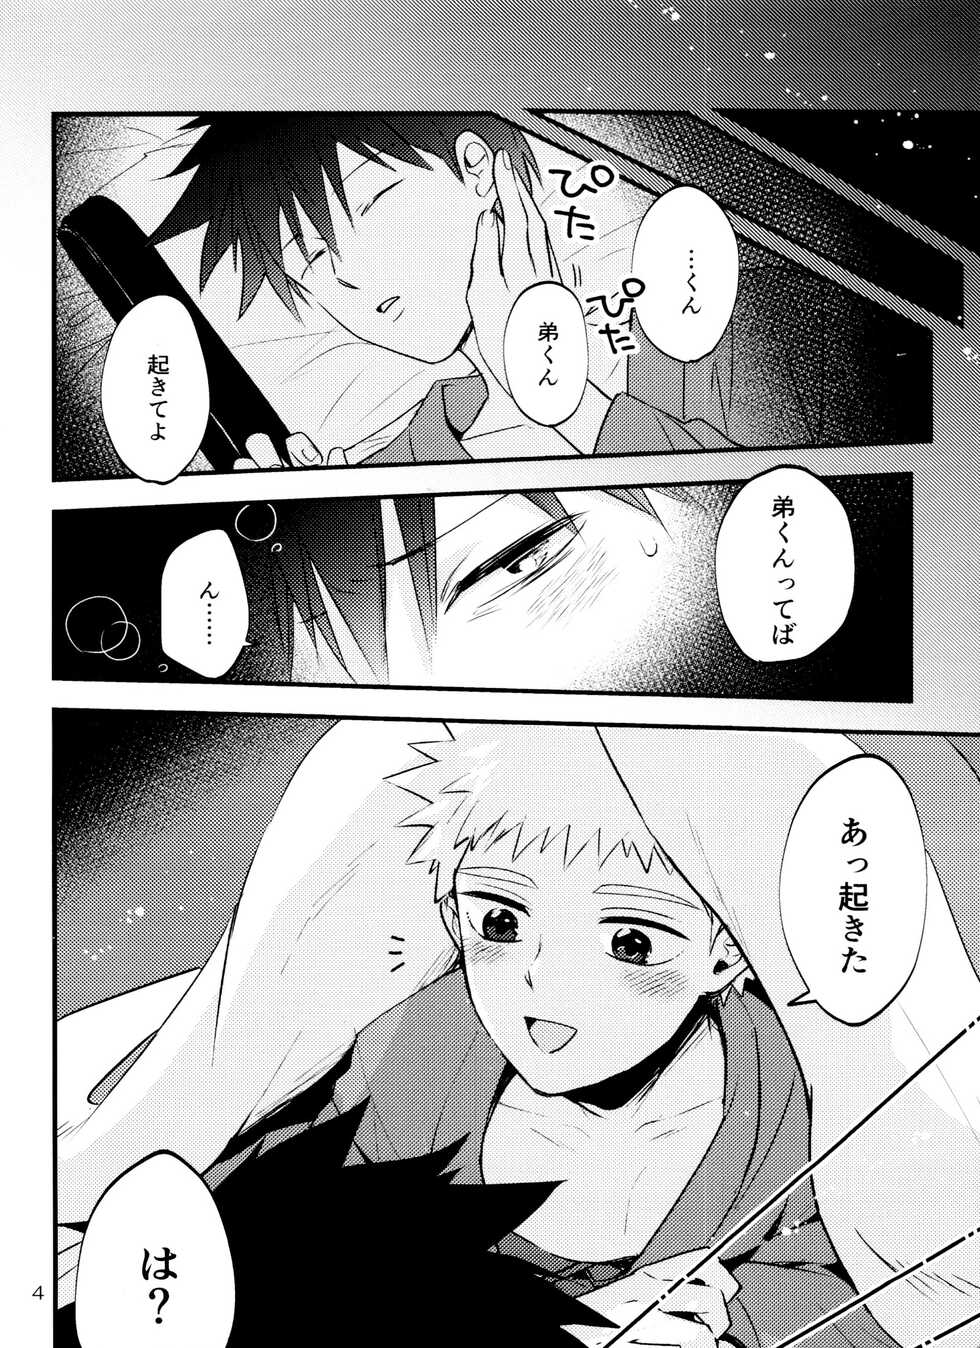 [Zipzap (Matsuda Rogo)] Son'na tsumori janain desu! (Mob Psycho 100) - Page 3